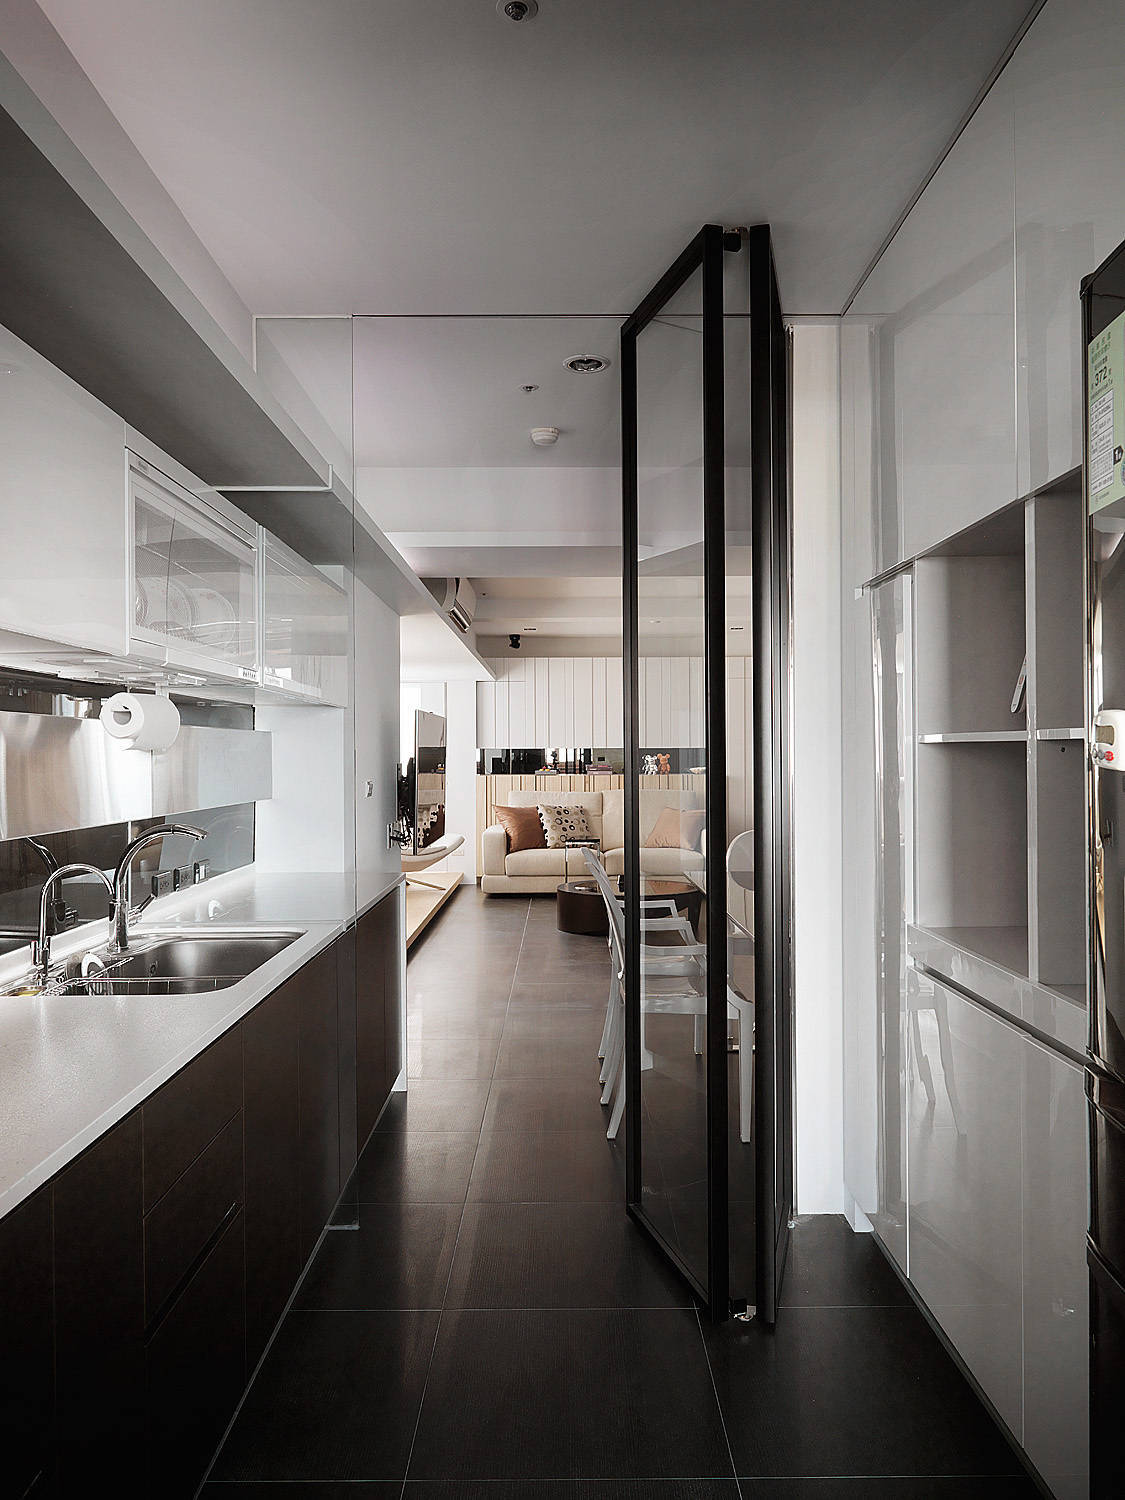 厨房 现代 简约图片来自tukumajia在122方现代简约三居的分享